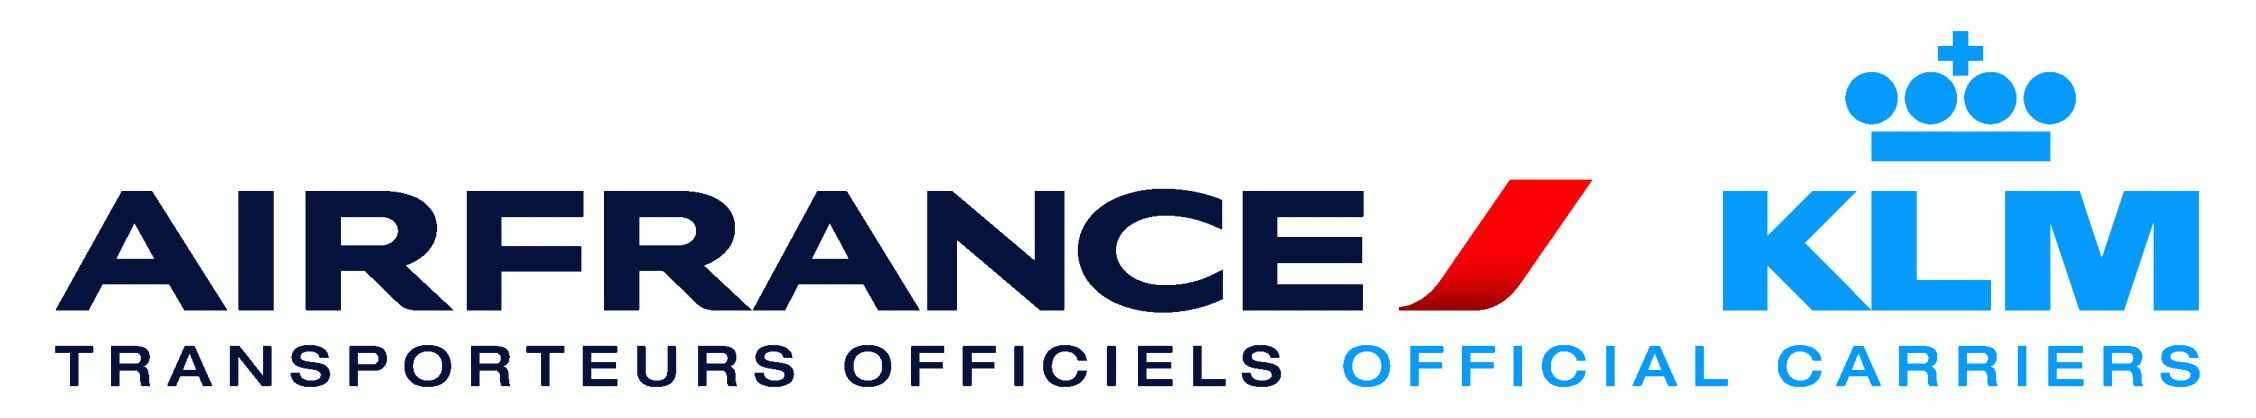 logo-Air-France-KLM